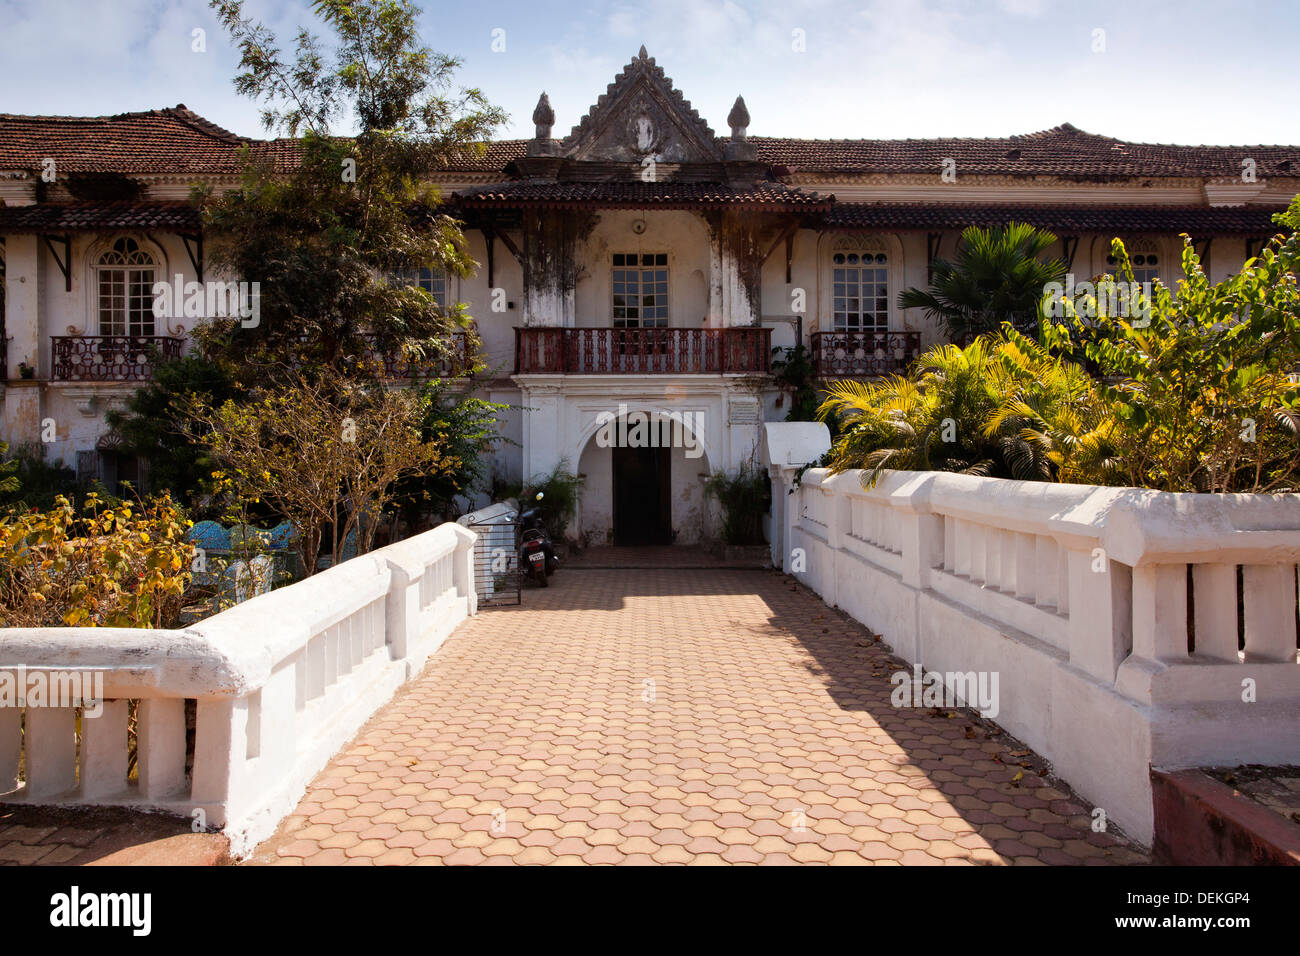 Facade of a building, Menezes Braganza House, Chandor, Salcetta, South Goa, Goa, India Stock Photo